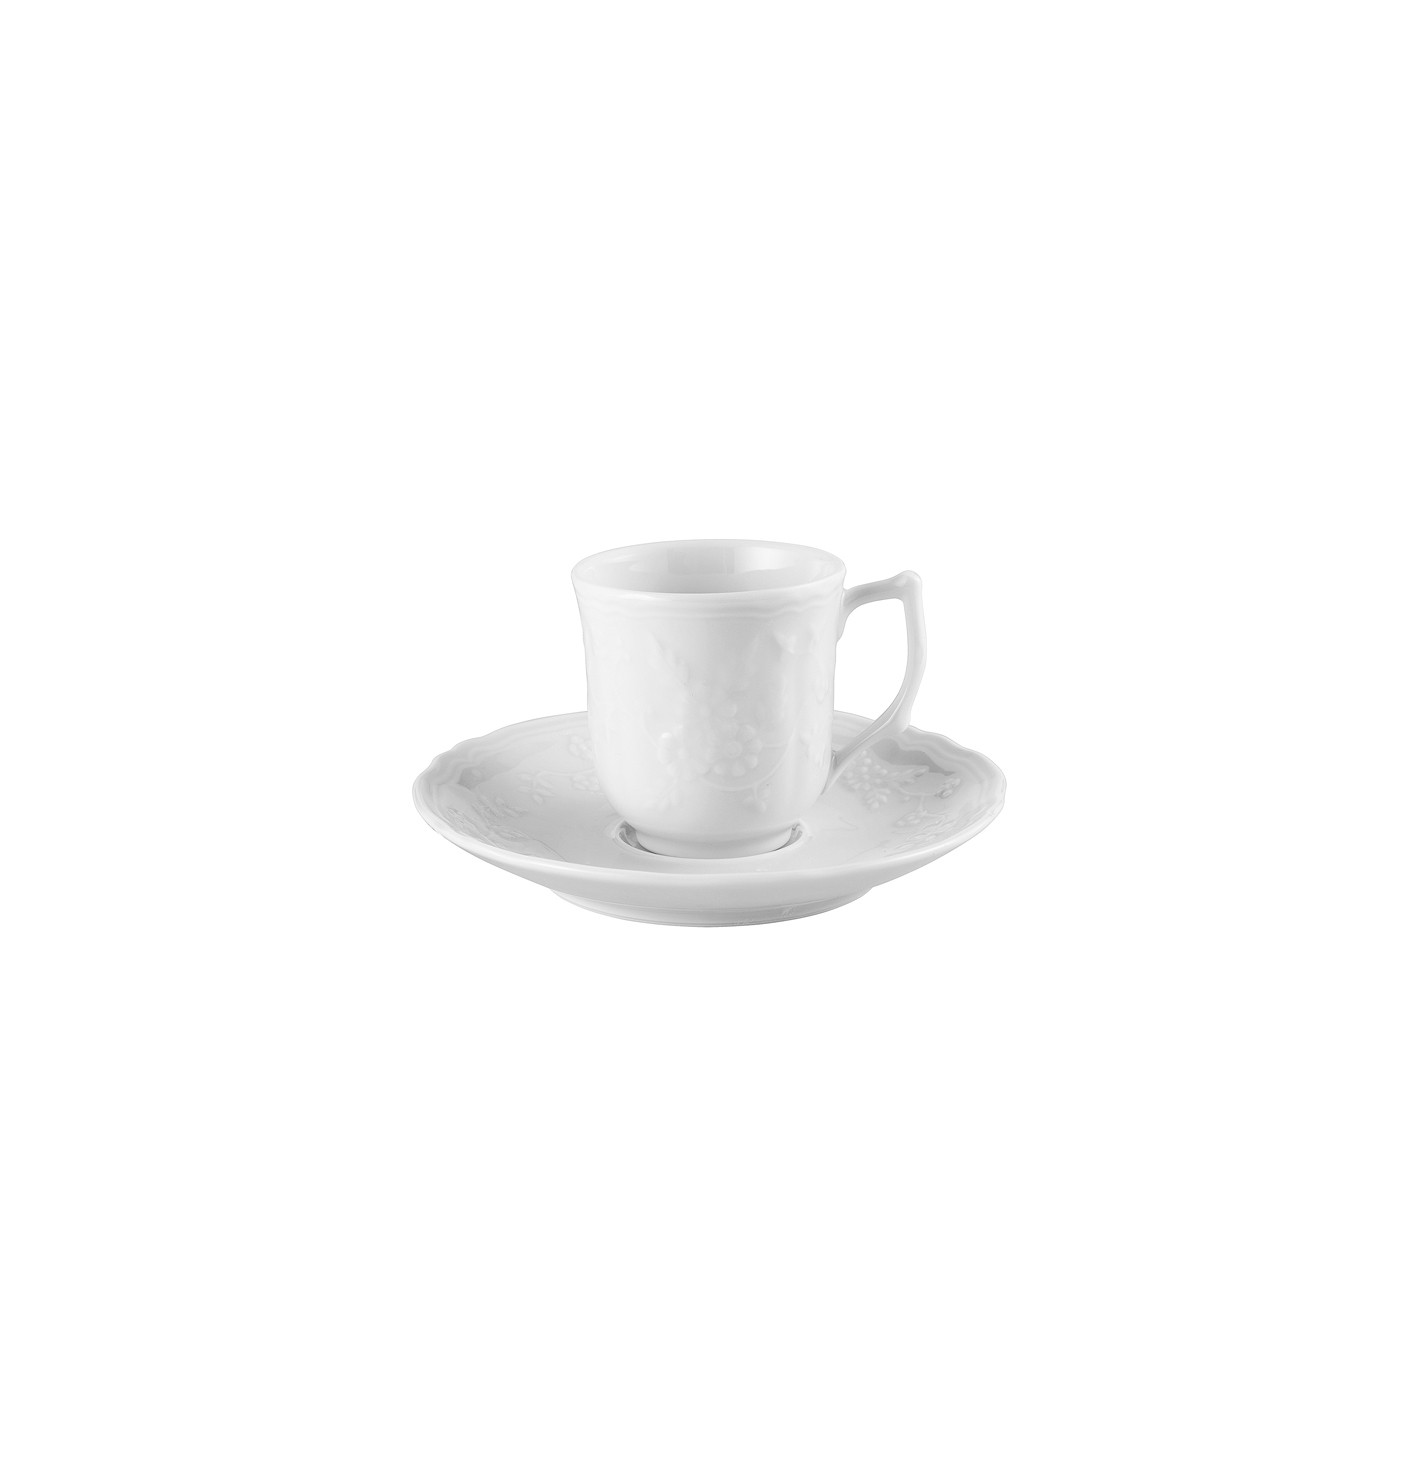 Tasse café - expresso 13 cl en porcelaine - Anamorphoses - Raynaud